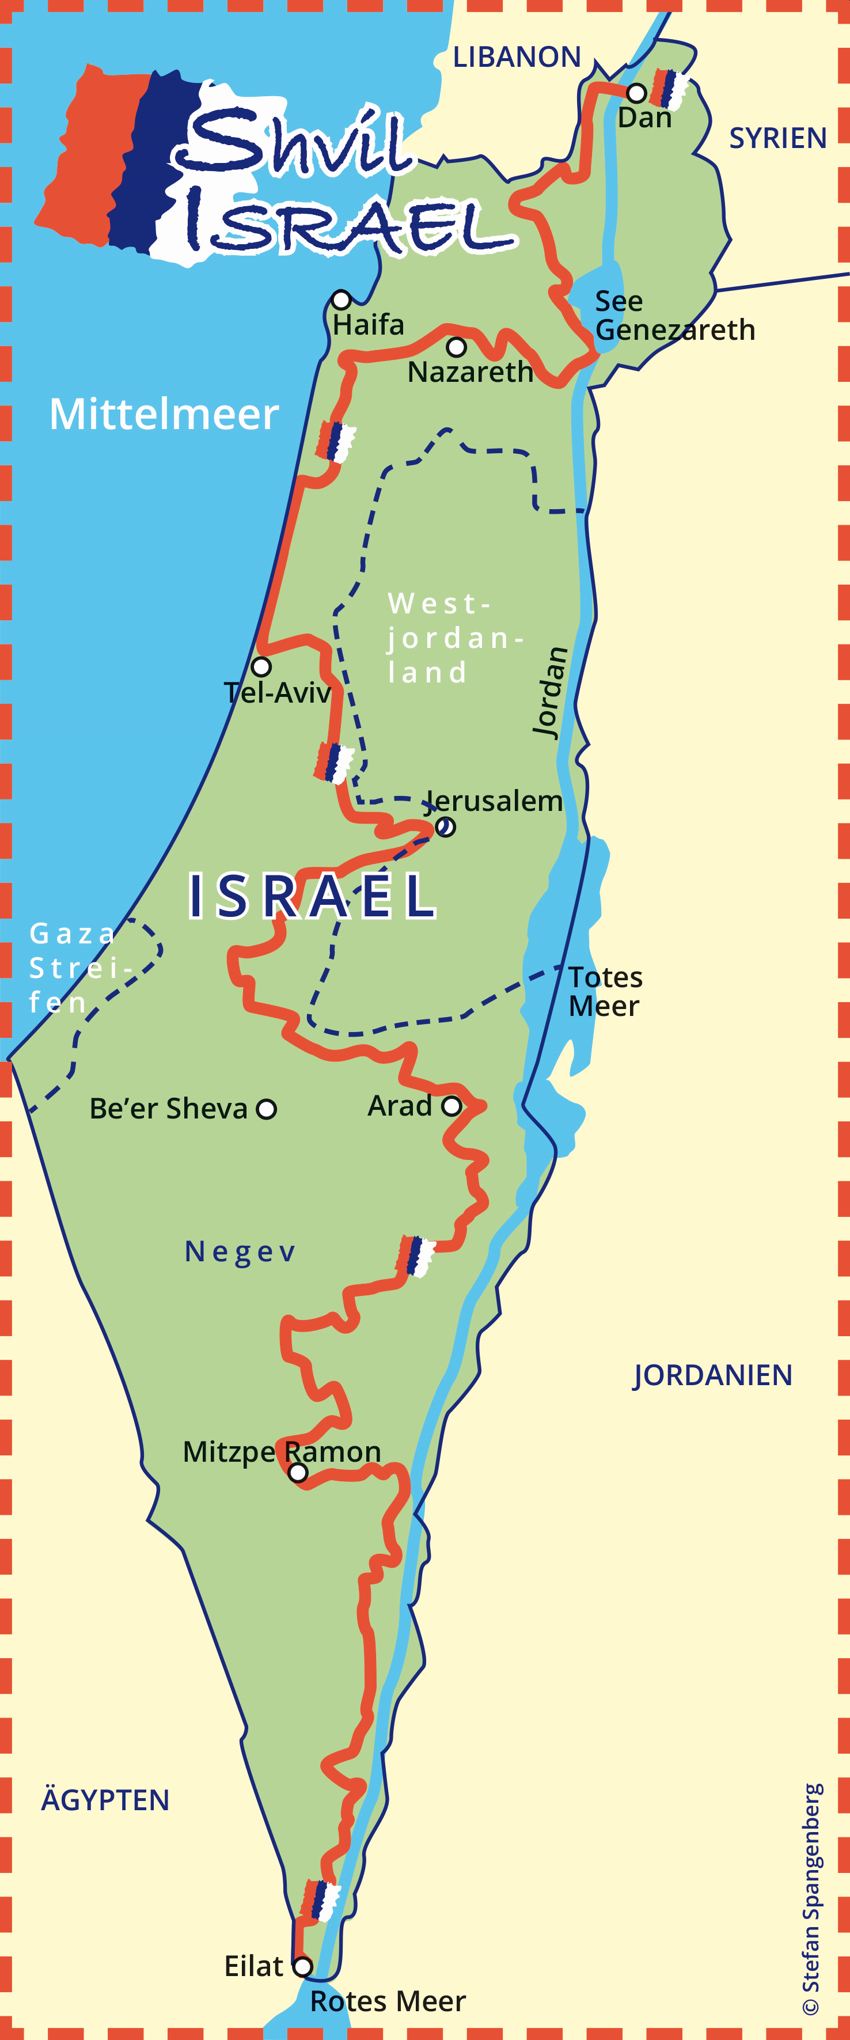 Shvil Israel